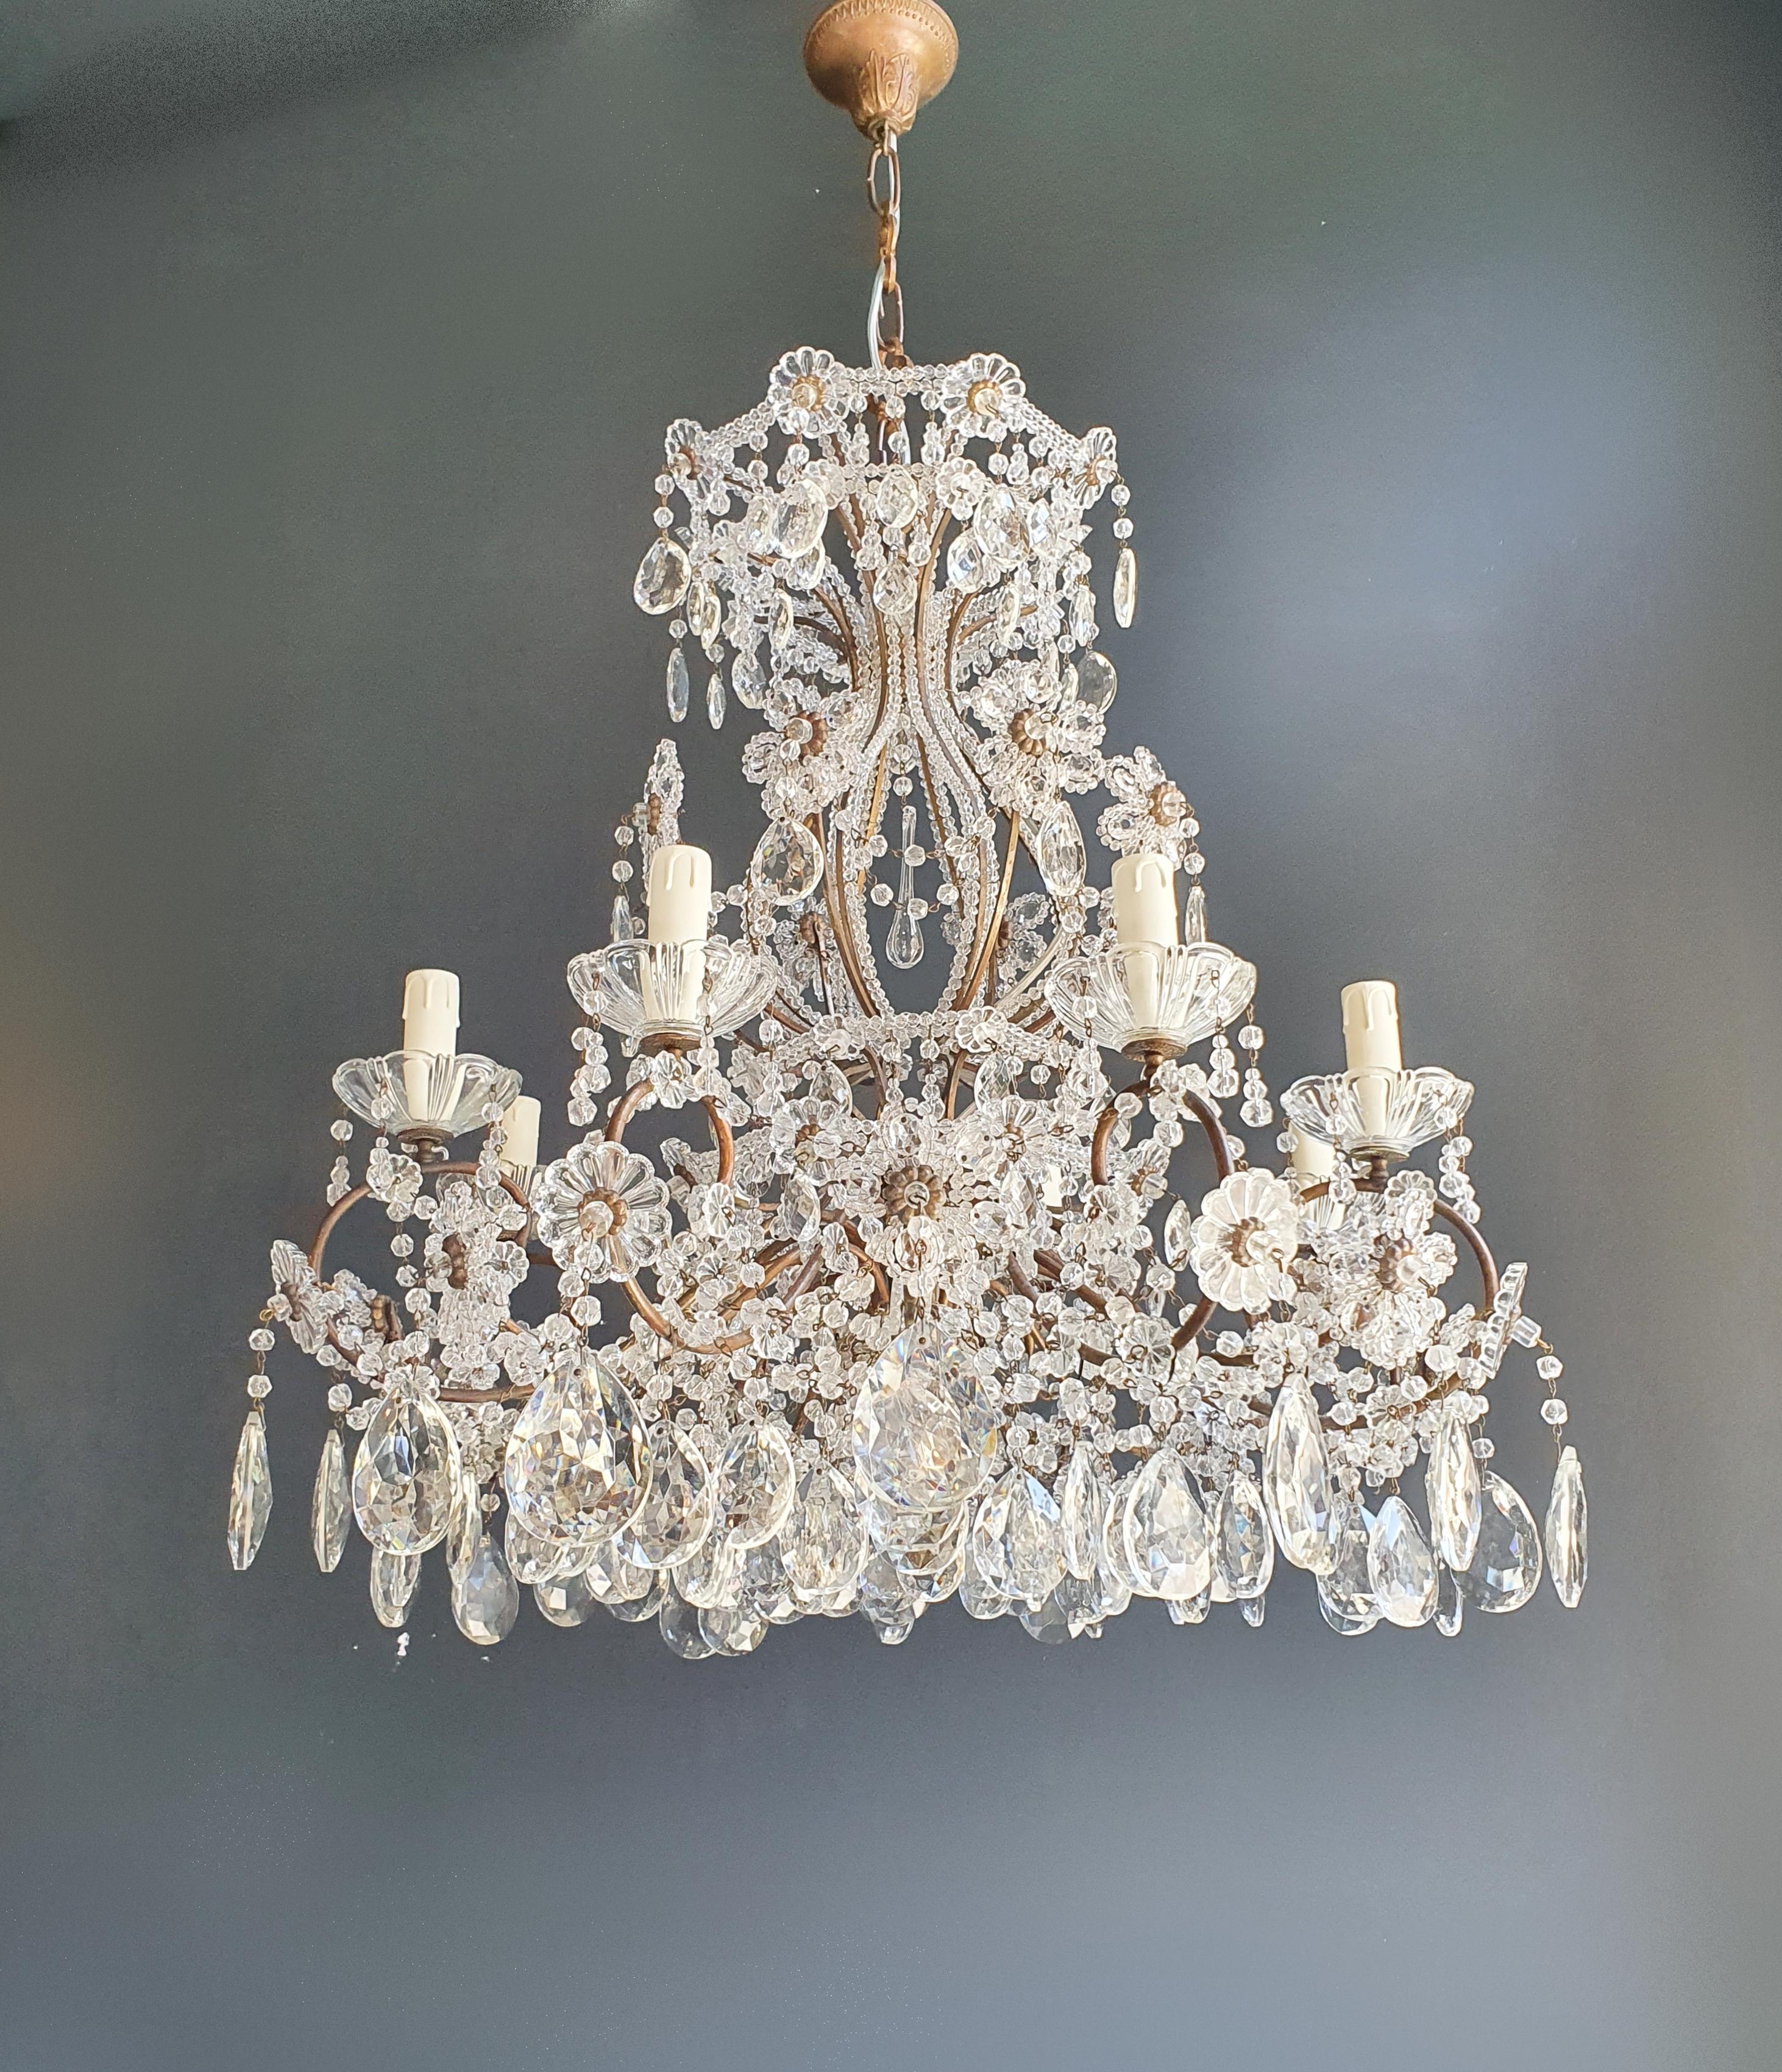 Brass Crystal Chandelier Antique Ceiling Lamp Lustre Art Nouveau Lamp 3